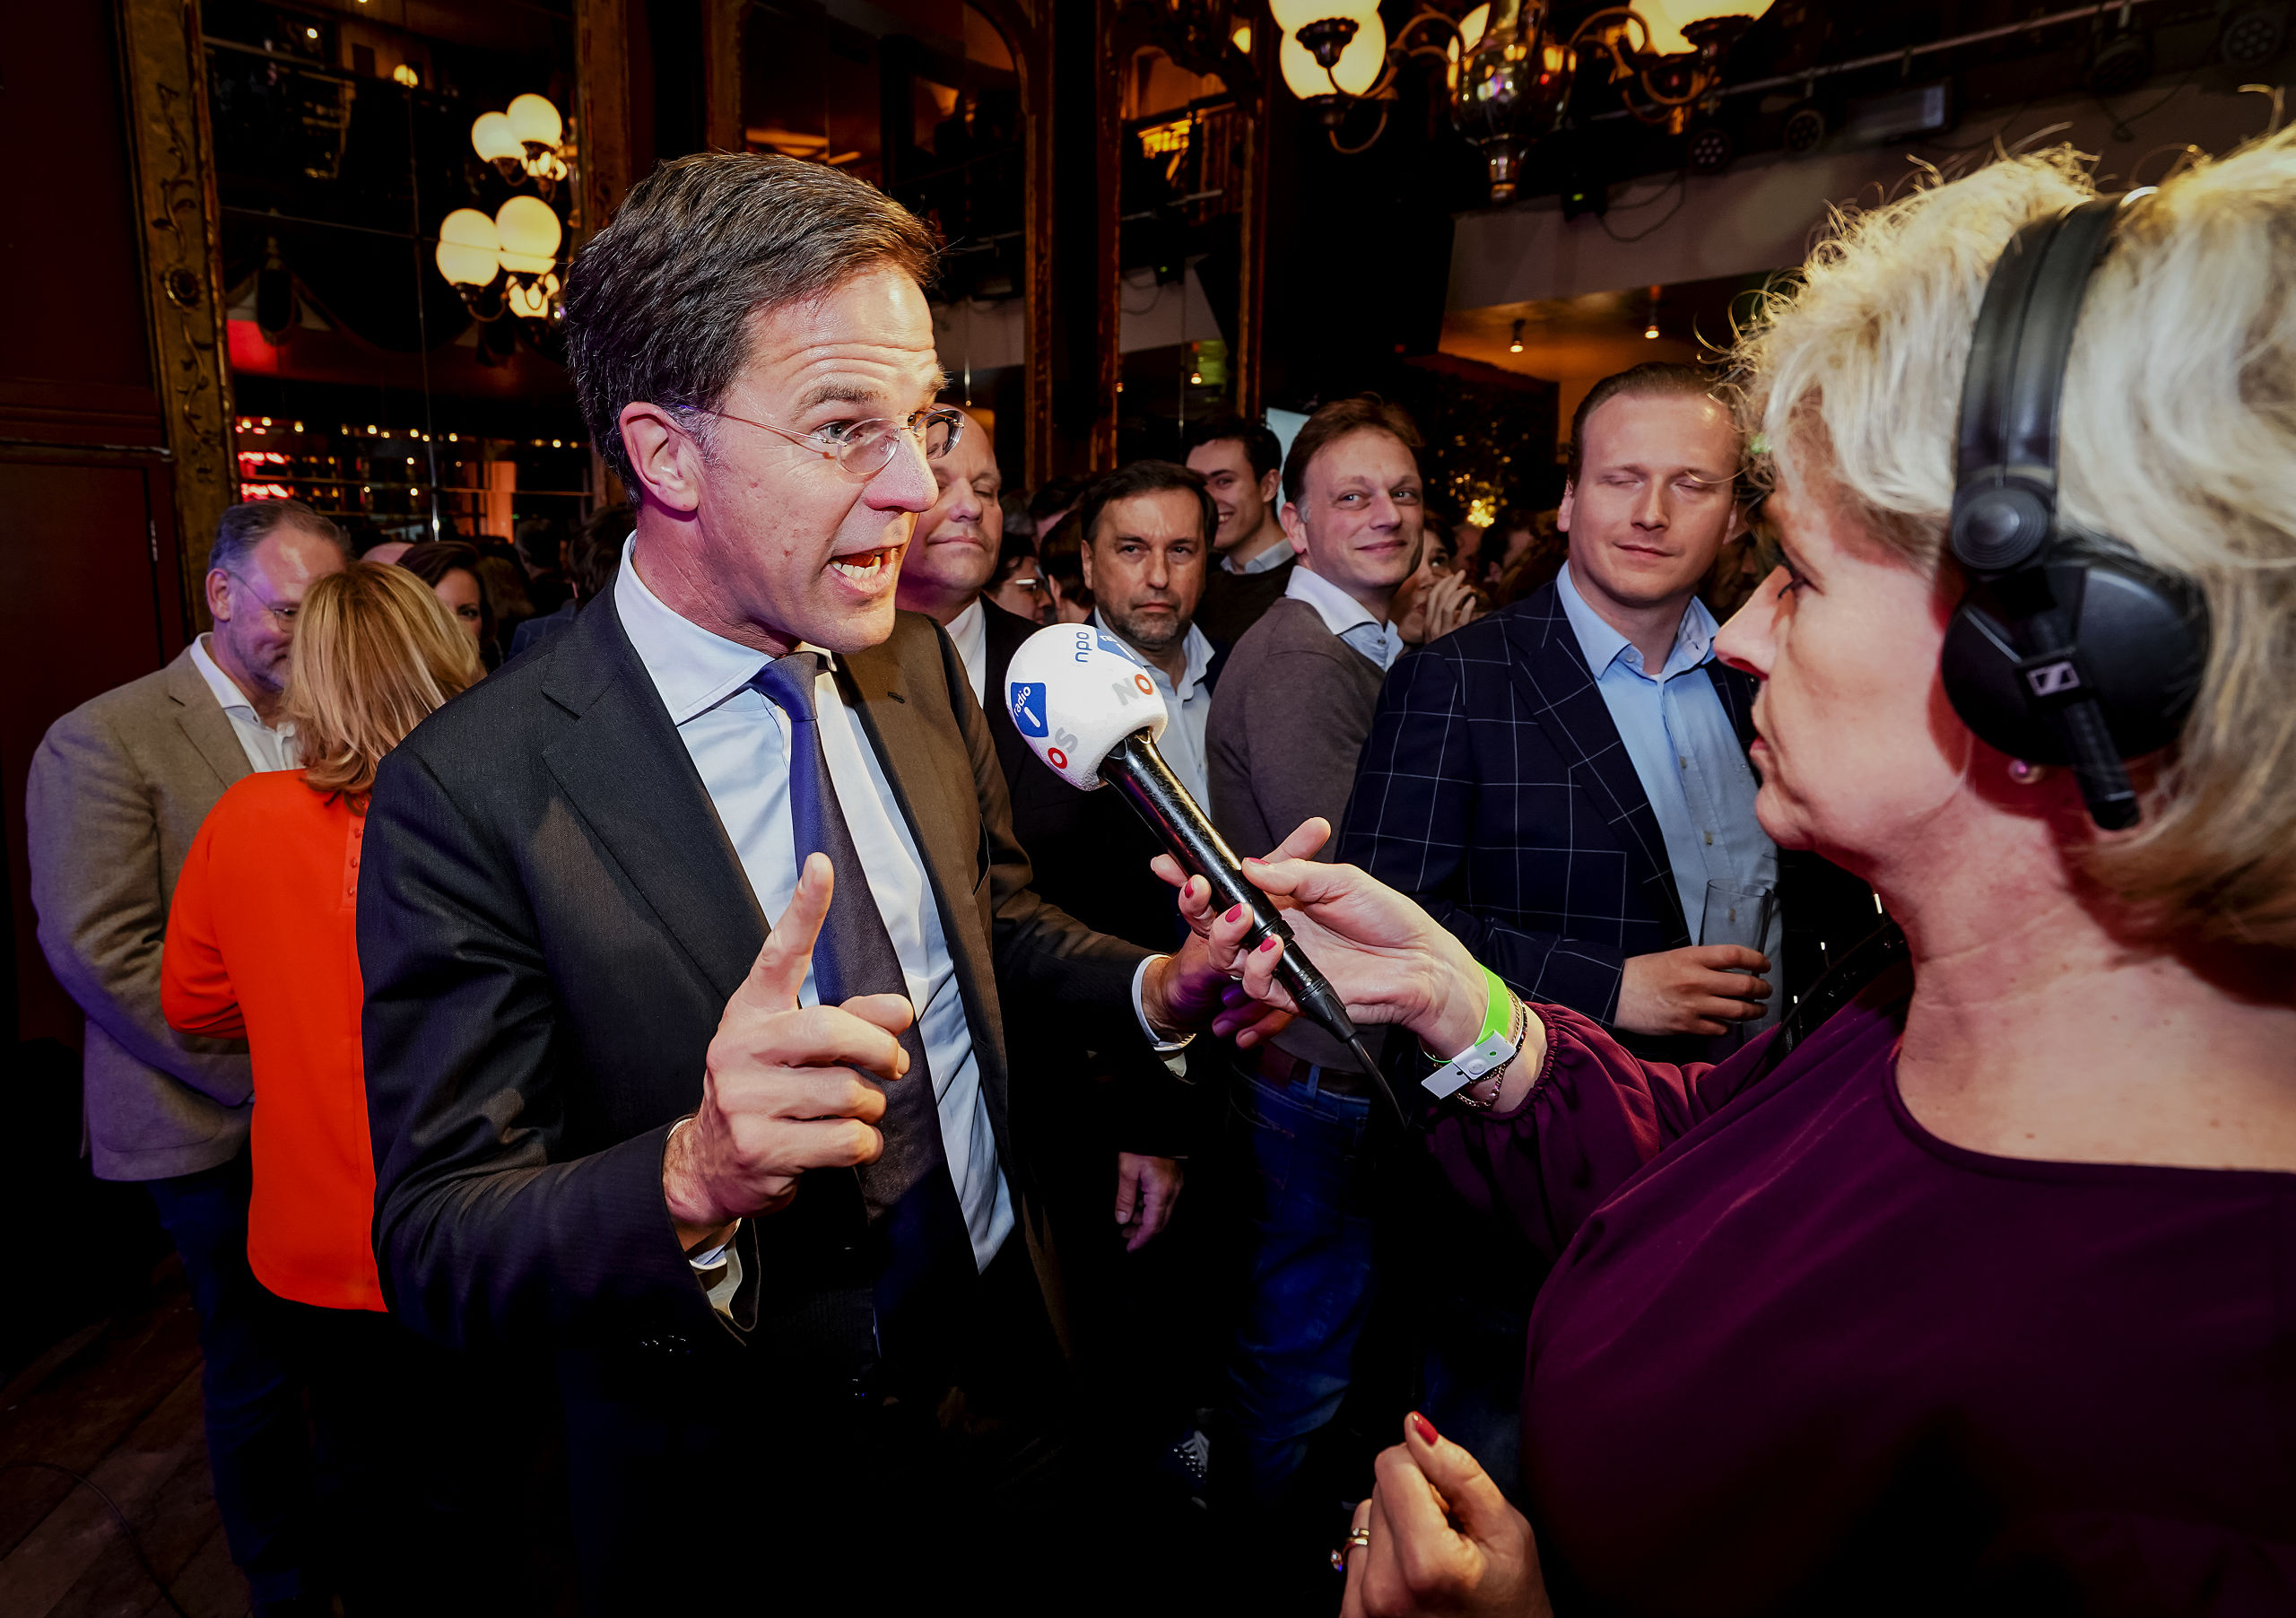 2019-03-20 23:24:53 UTRECHT - Lijsttrekker Mark Rutte van de VVD staat de pers te woord tijdens de uitslagenavond van de Provinciale Staten- en Waterschapsverkiezingen. ANP LEX VAN LIESHOUT